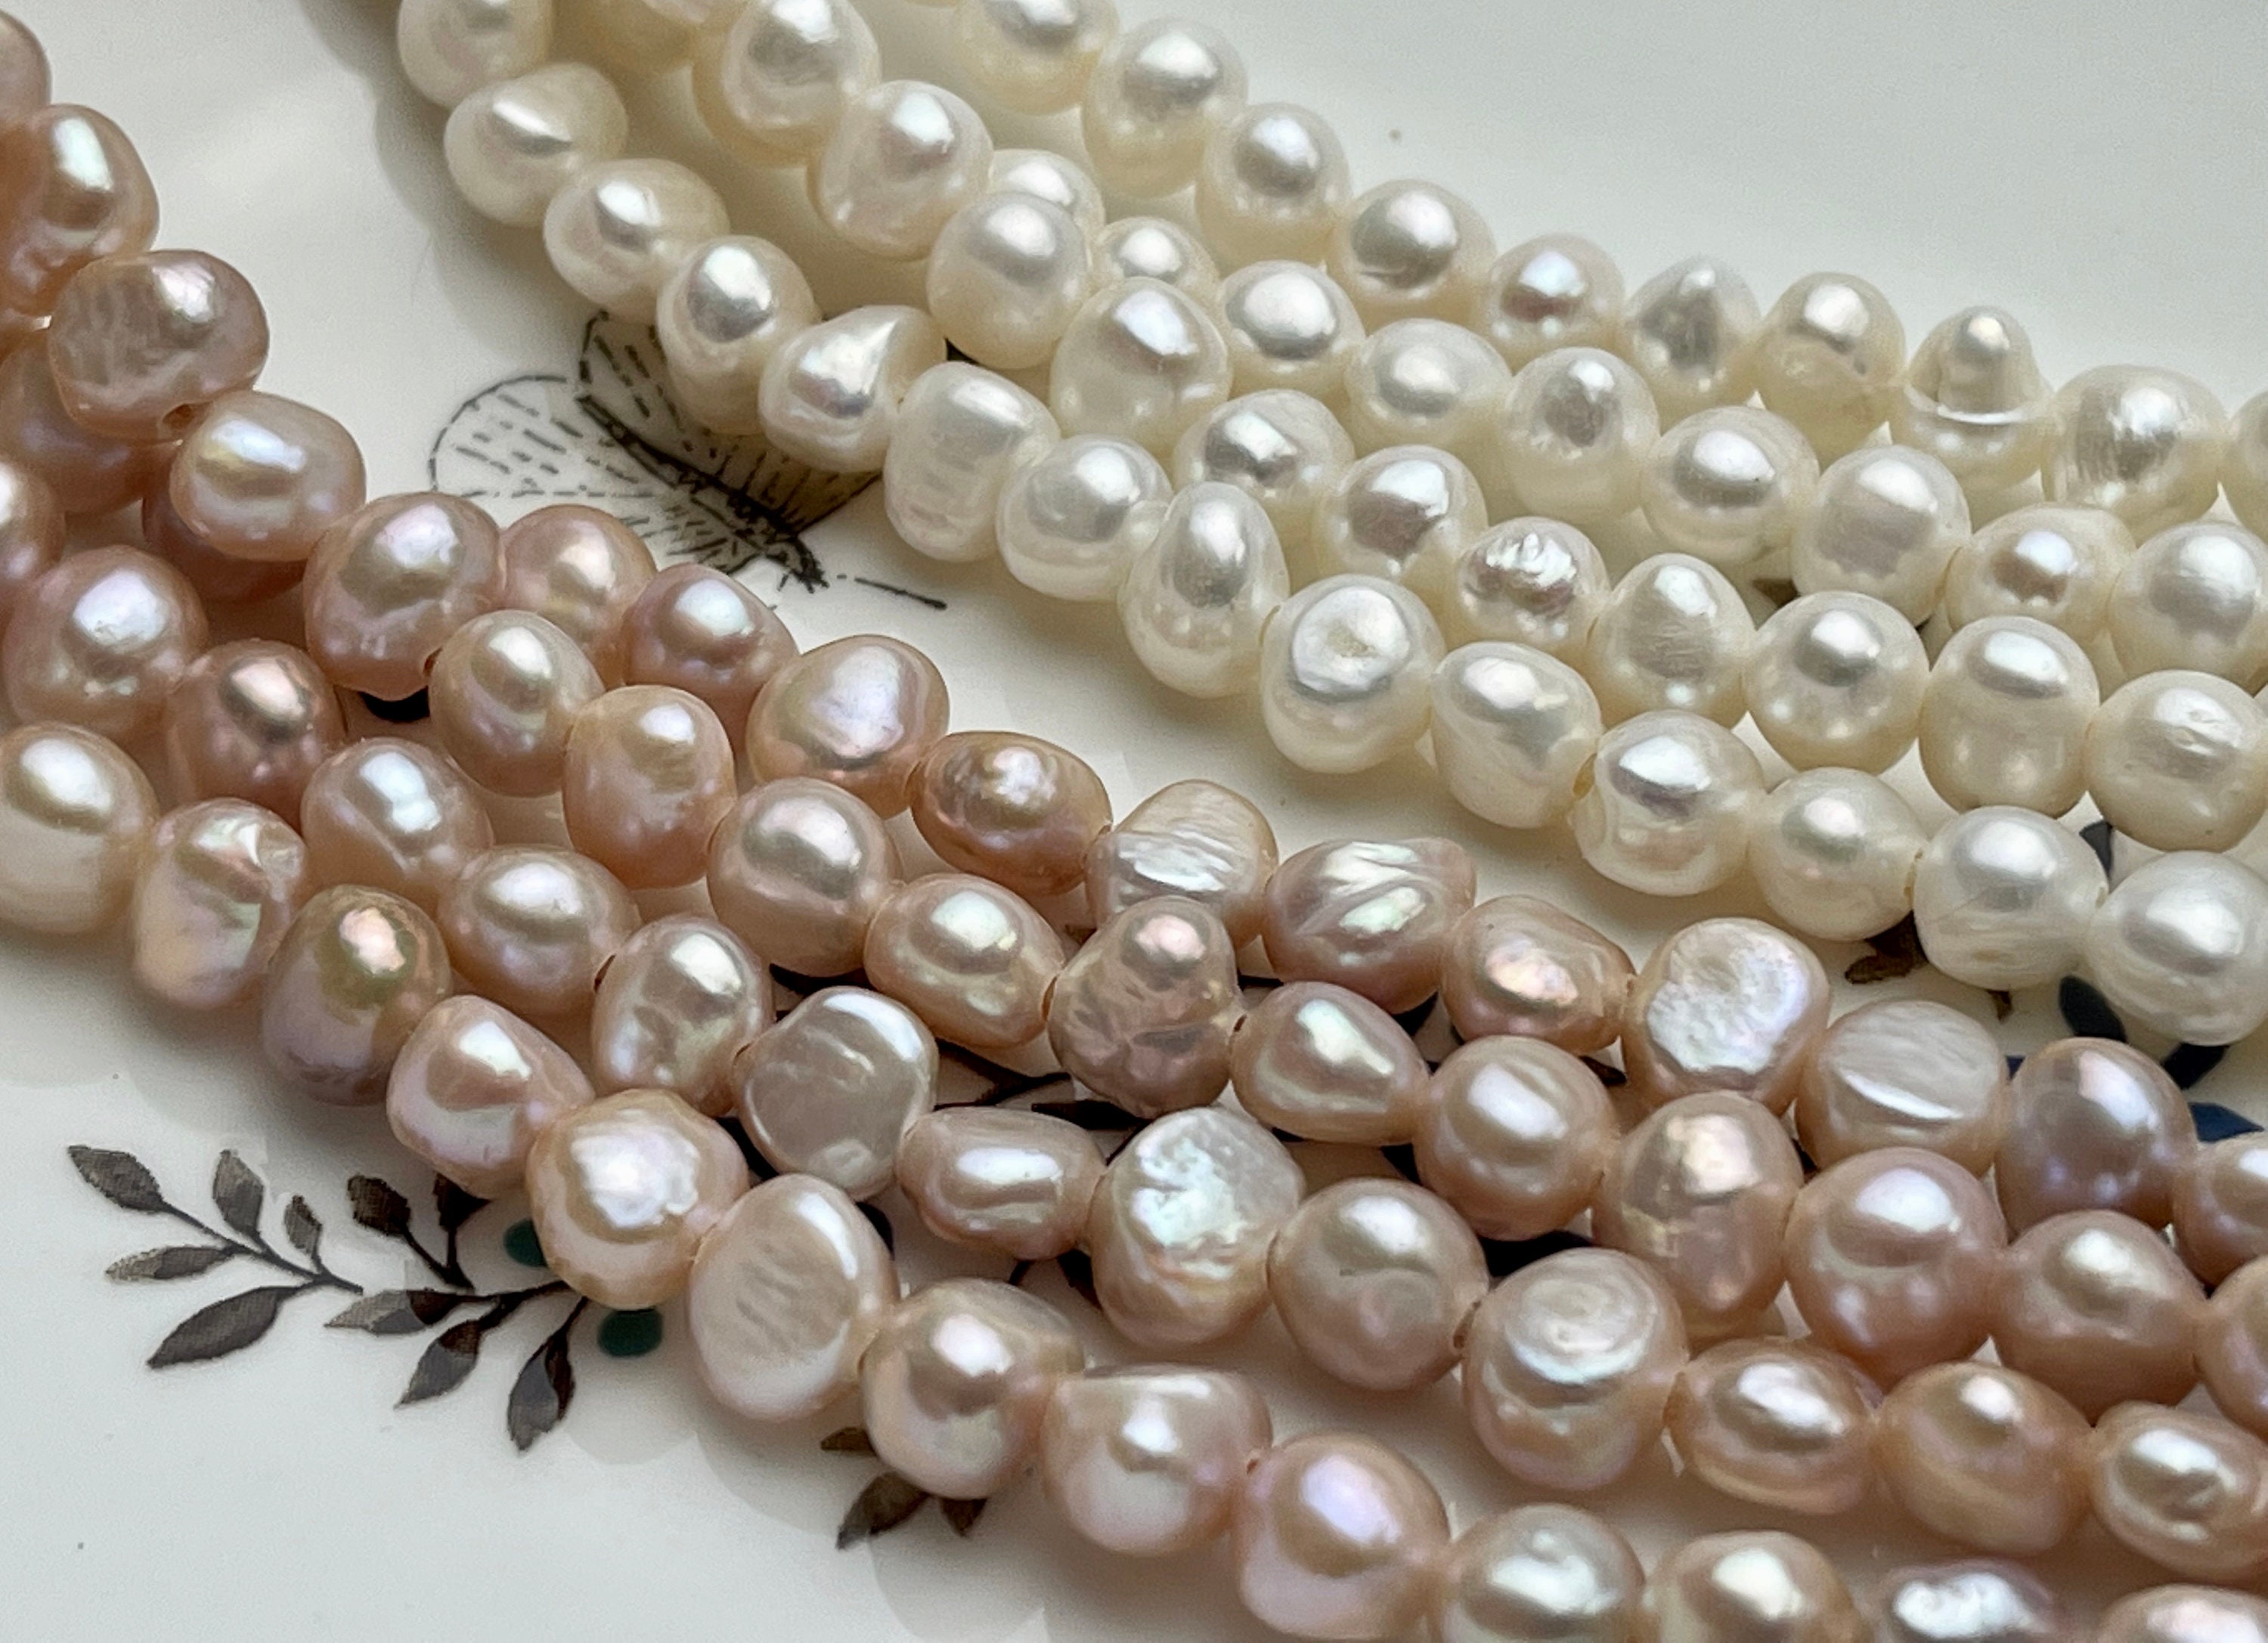 Perles d'eau douce blanches 7/8 mm - Un grand marché